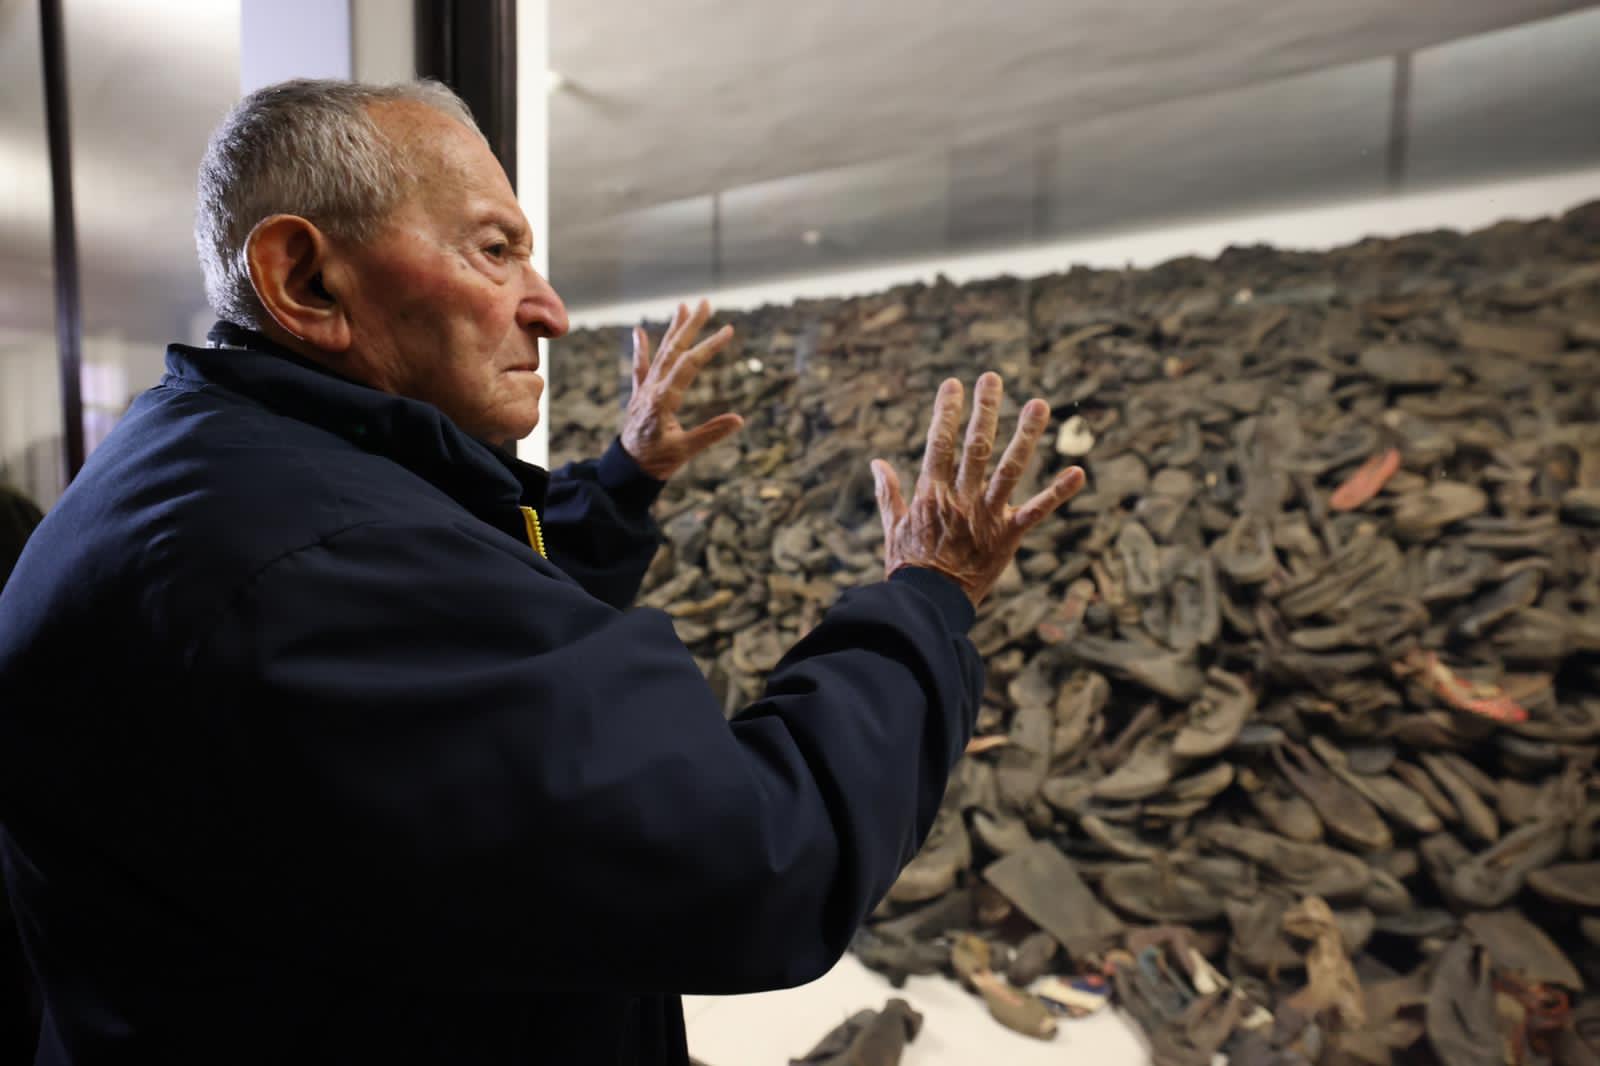 La emoción de un sobreviviente del Holocausto al observar los miles de zapatos pertenecientes a las víctimas que fueron asesinadas en el campo de Auschwitz, en Polonia, por la Alemania nazi. (Tali Natapov - Neishlos Foundation)